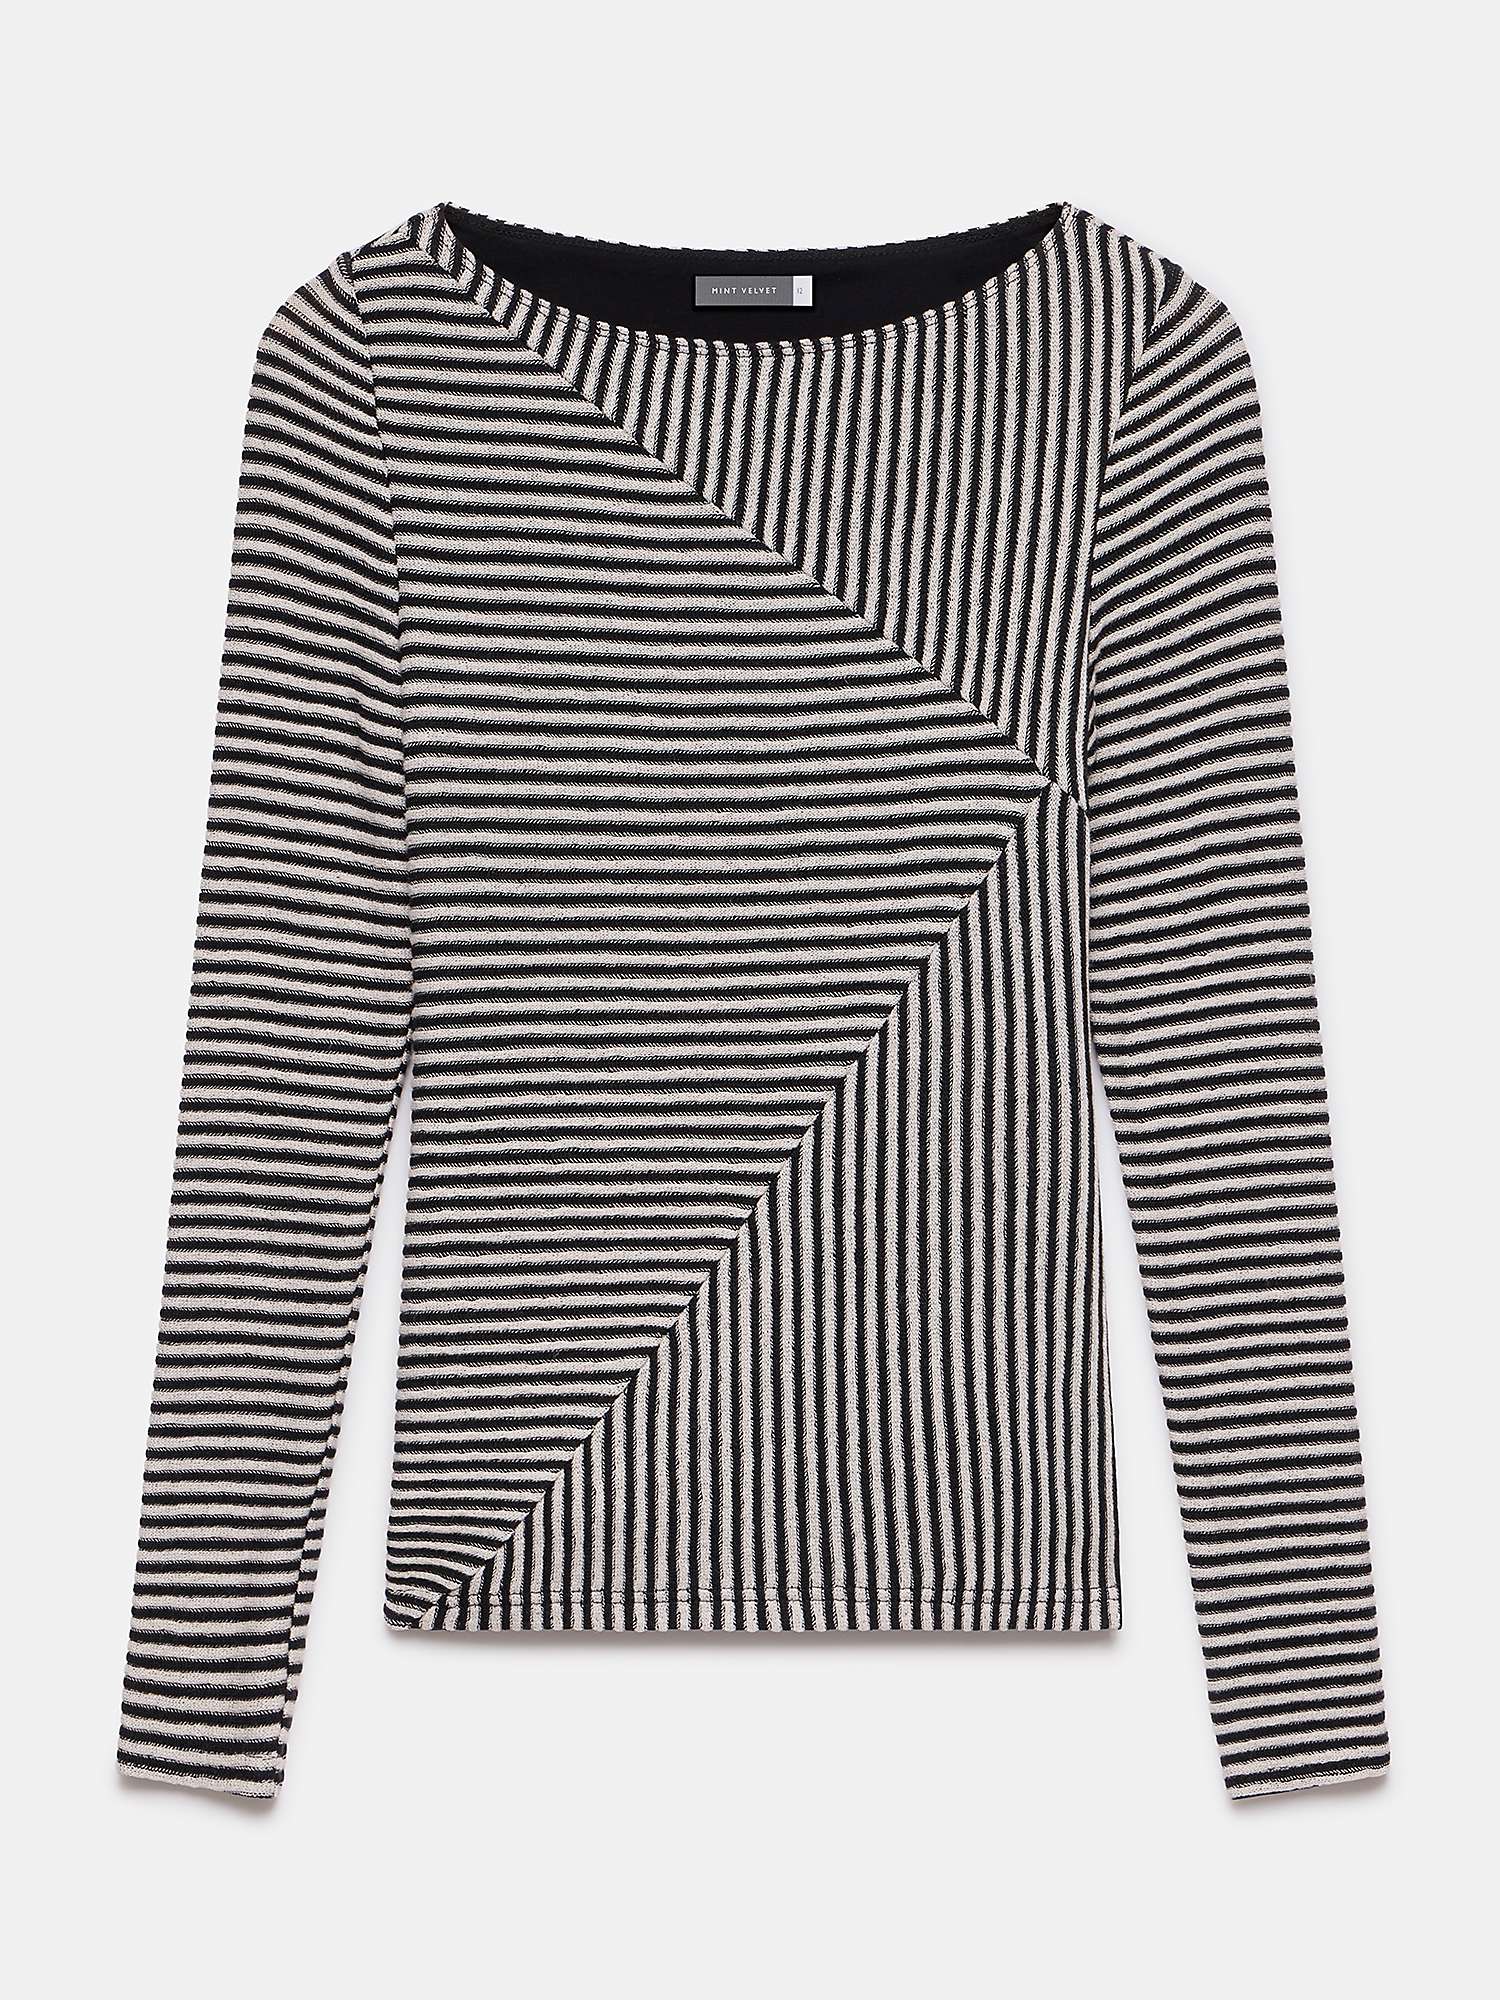 Buy Mint Velvet Black Striped Long Sleeve Top, Black/White Online at johnlewis.com